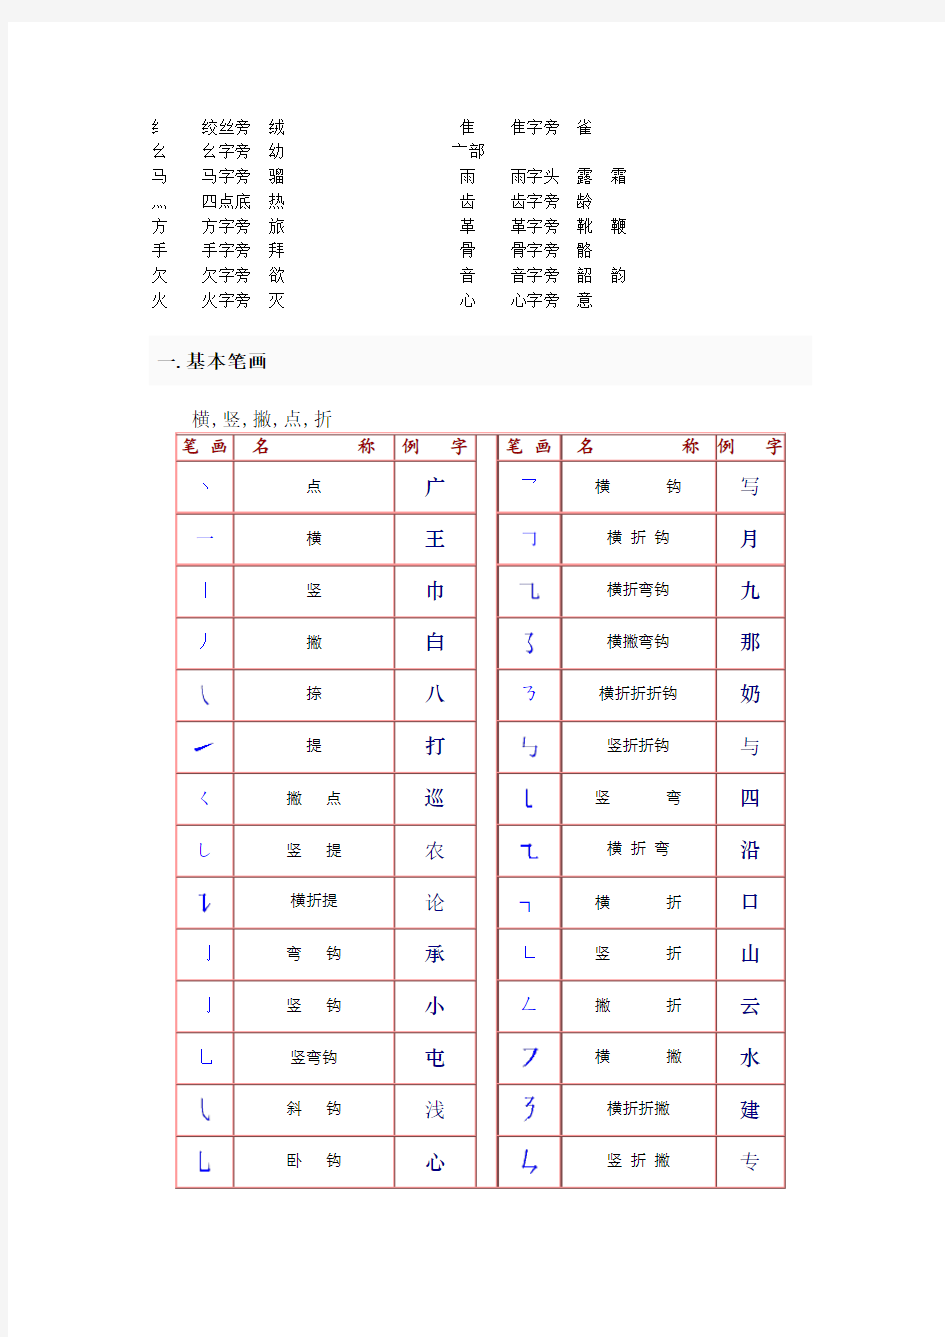 中国汉字的常见偏旁部首名称和基本笔画